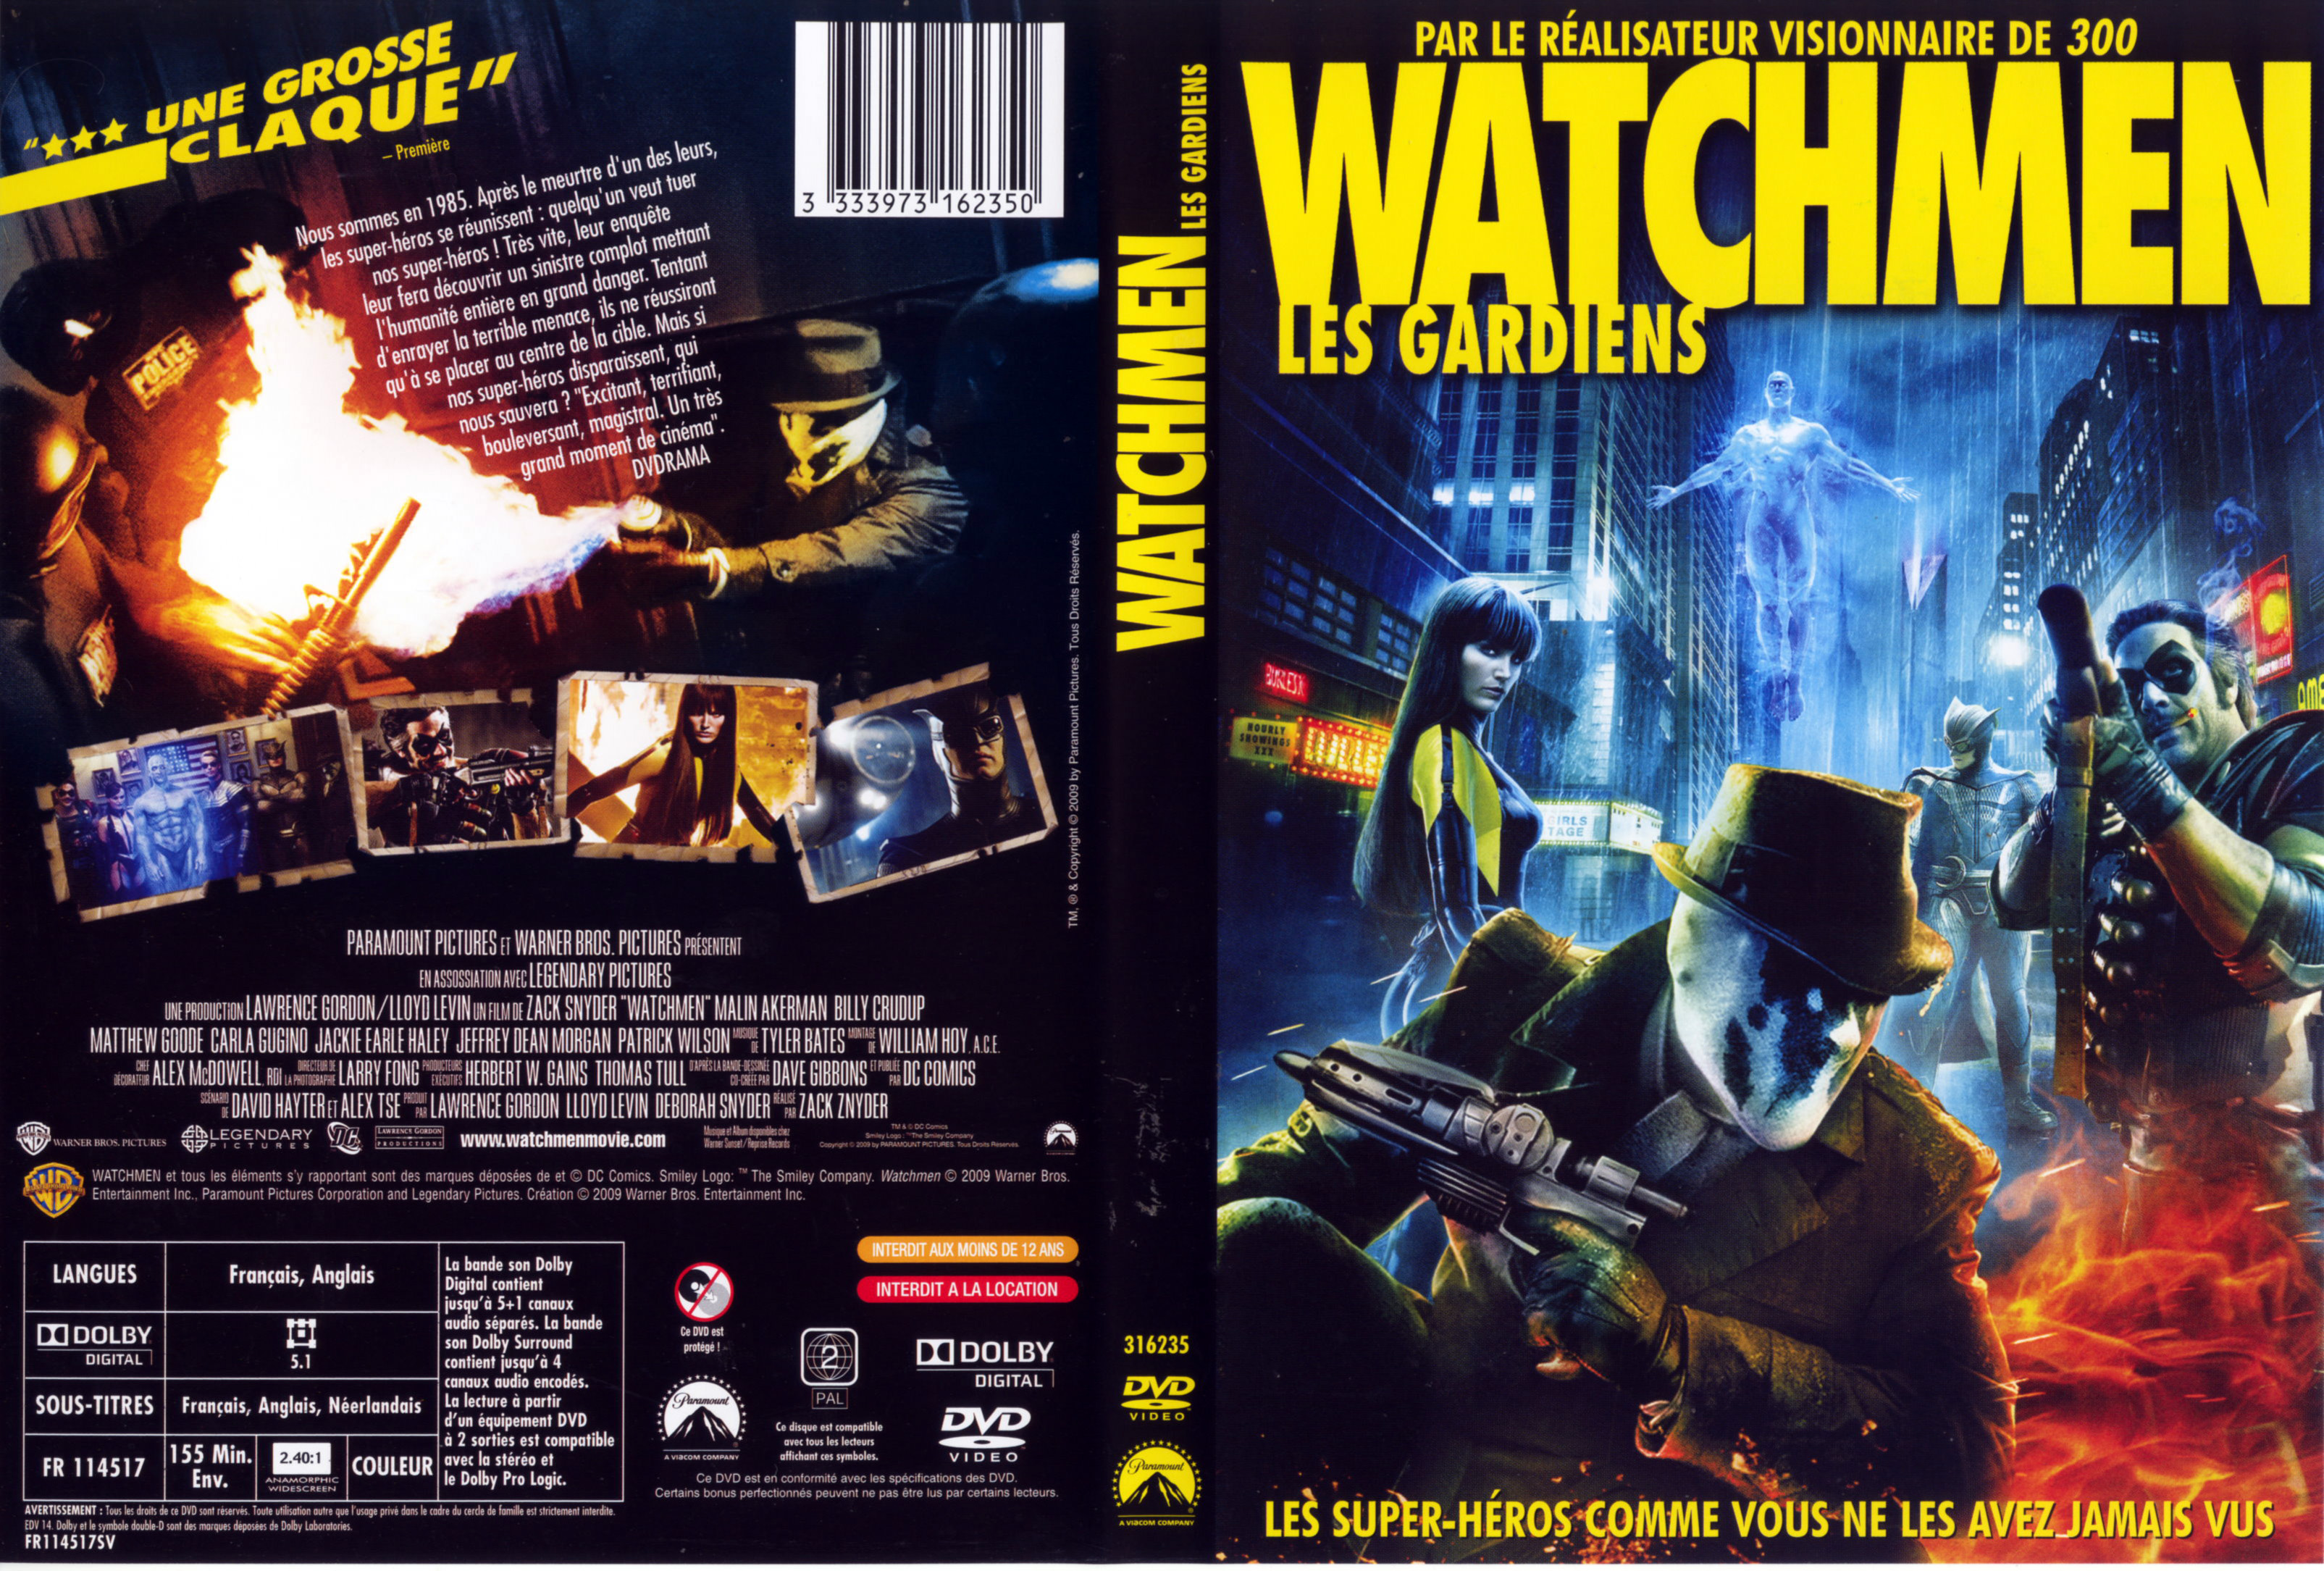 Jaquette DVD Watchmen les gardiens